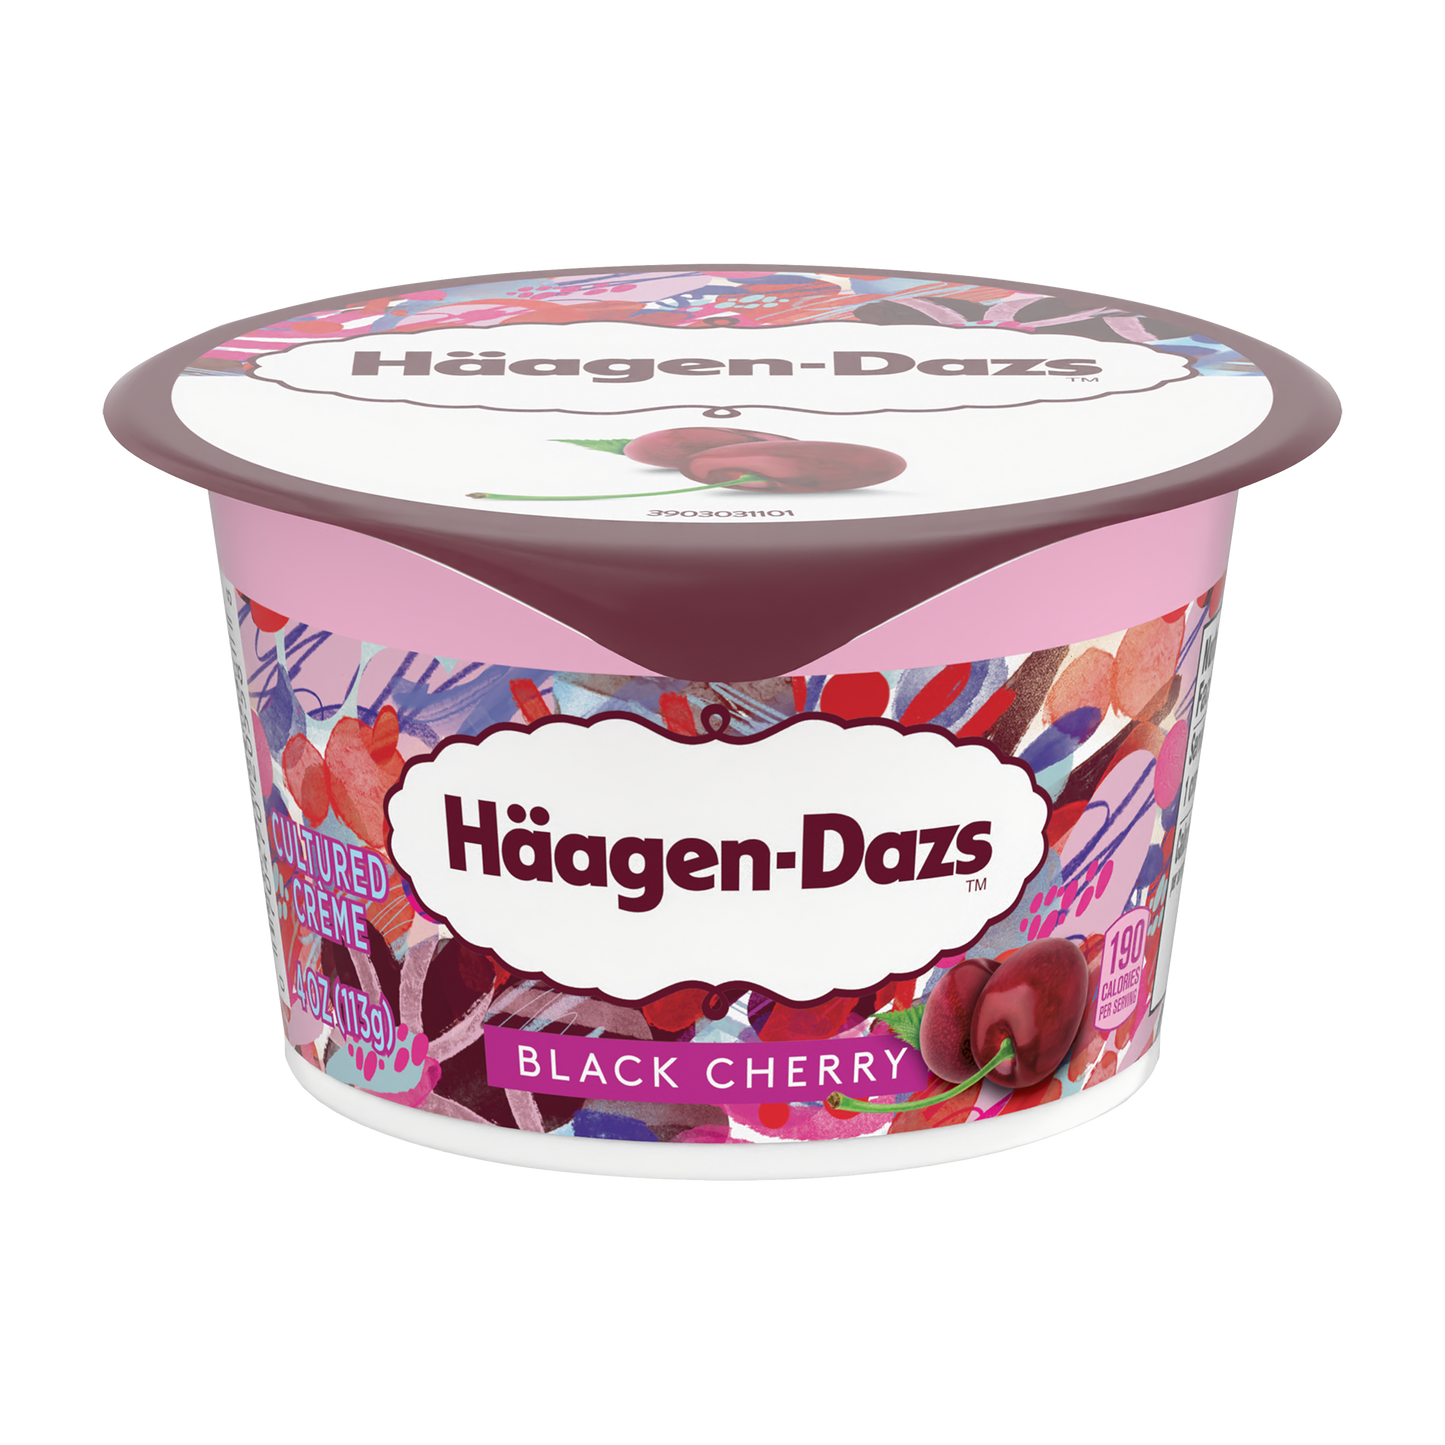 Haagen Dazs Black Cherry Yogurt, Front of Pack